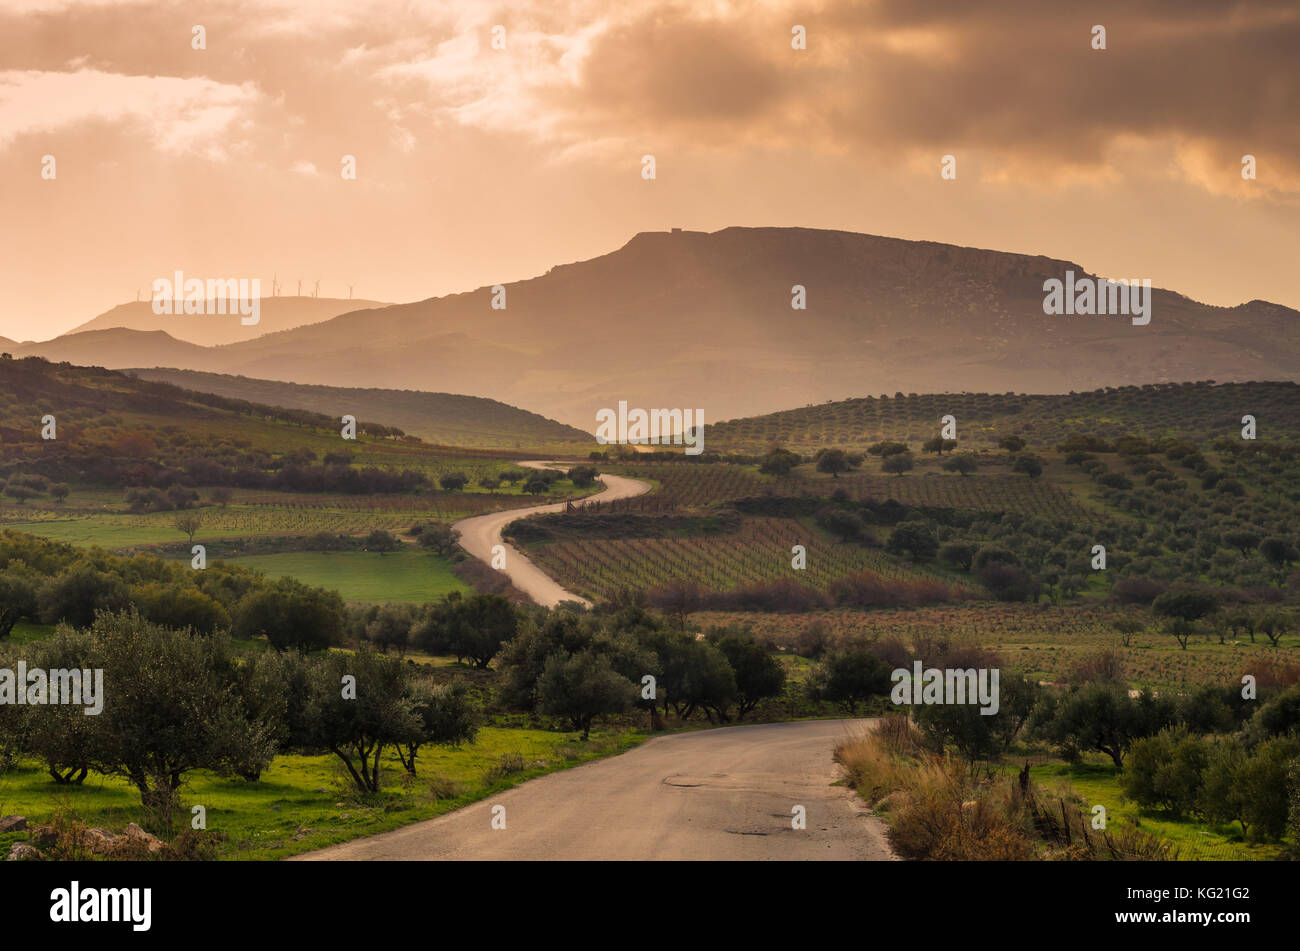 Einen malerischen Blick auf die kretische Landschaft bei Sonnenuntergang. für die Region typischen Olivenhaine, Olivenhaine, Weinberge und engen Straßen bis zu den Hügeln. Stockfoto